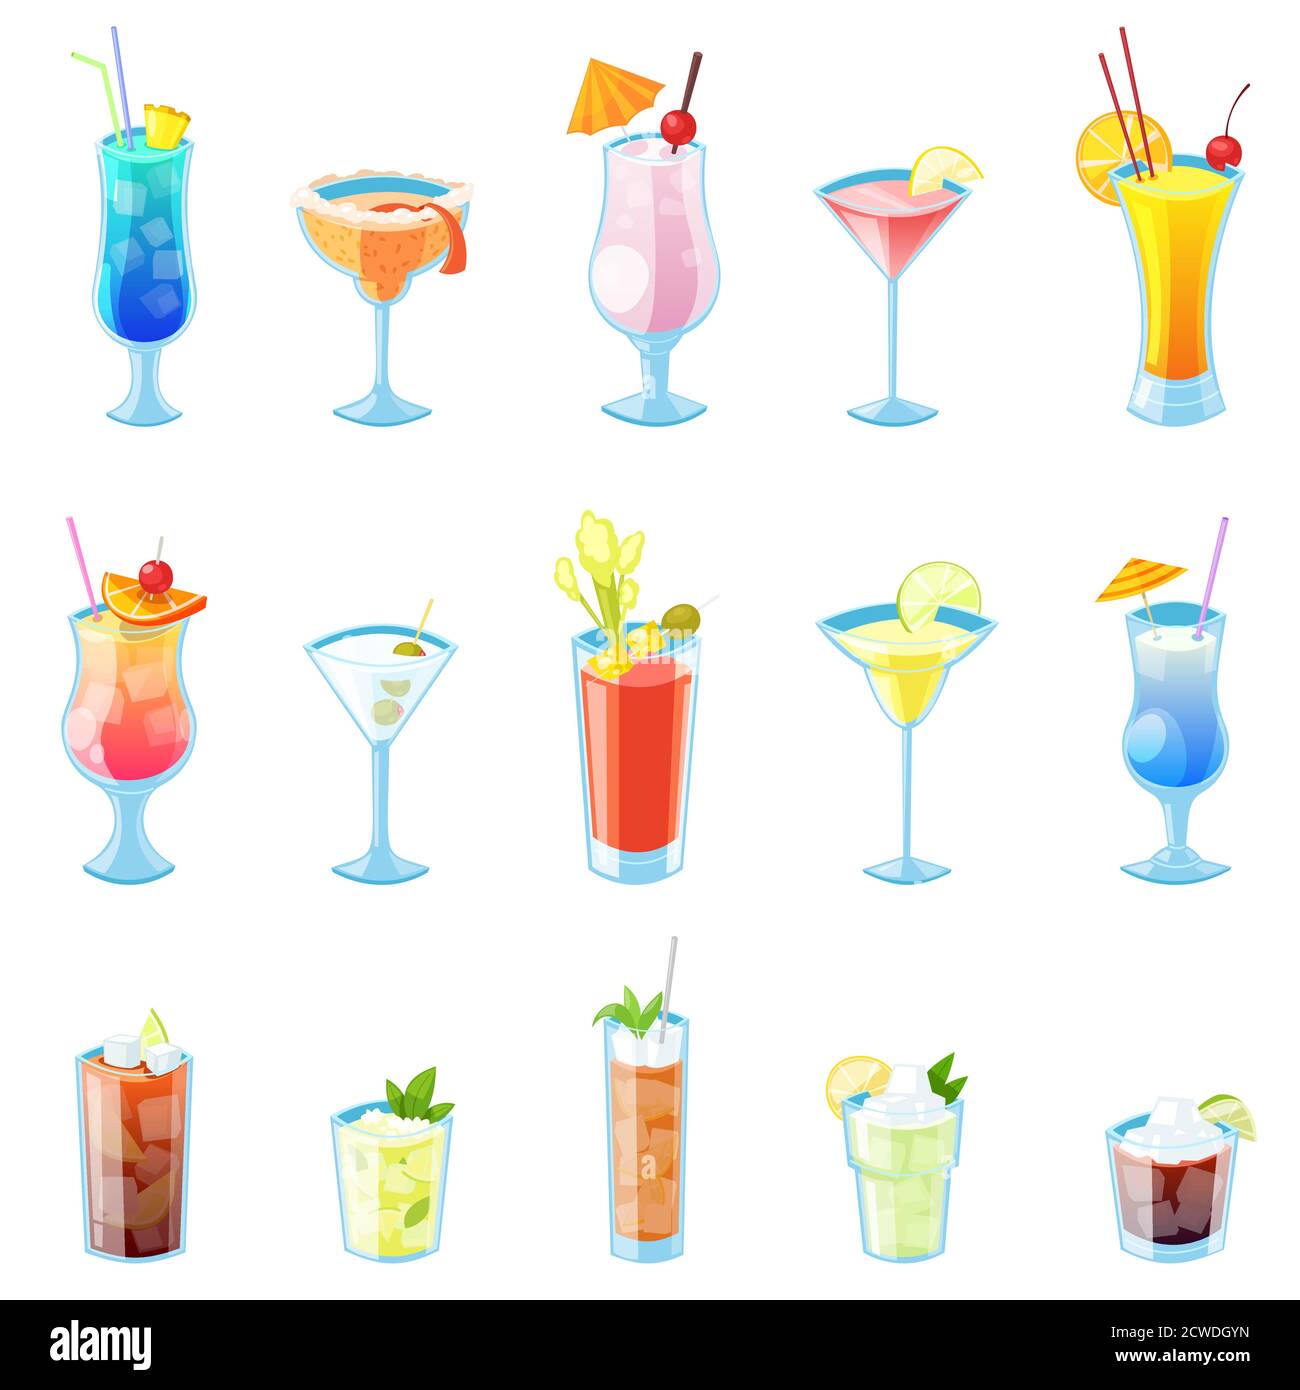 Illustrazione vettoriale dei cocktail tropicali. Set di icone di bevande e bevande isolate. Illustrazione Vettoriale